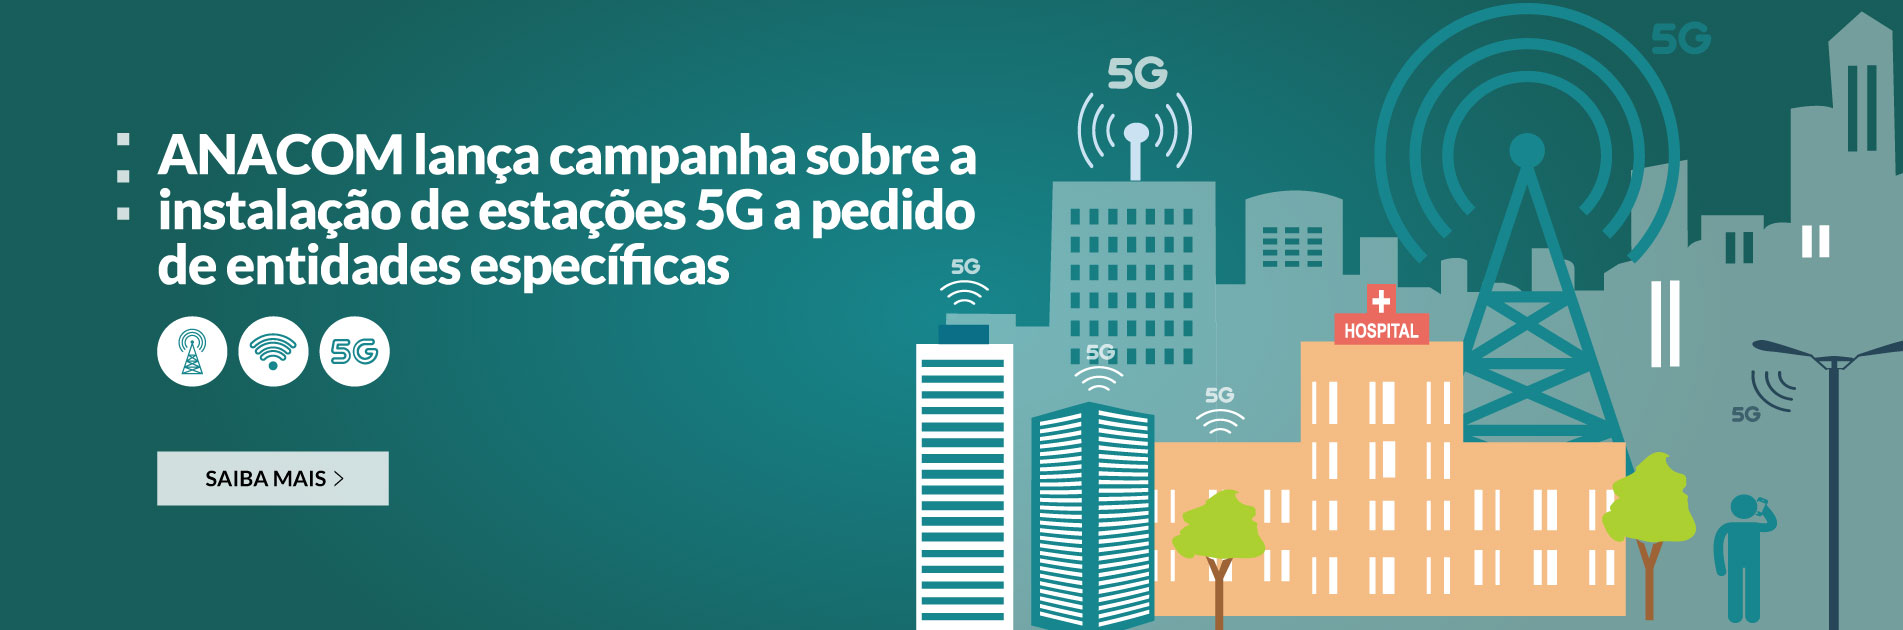 ANACOM lança campanha sobre a instalação de estações 5G a pedido de entidades específicas